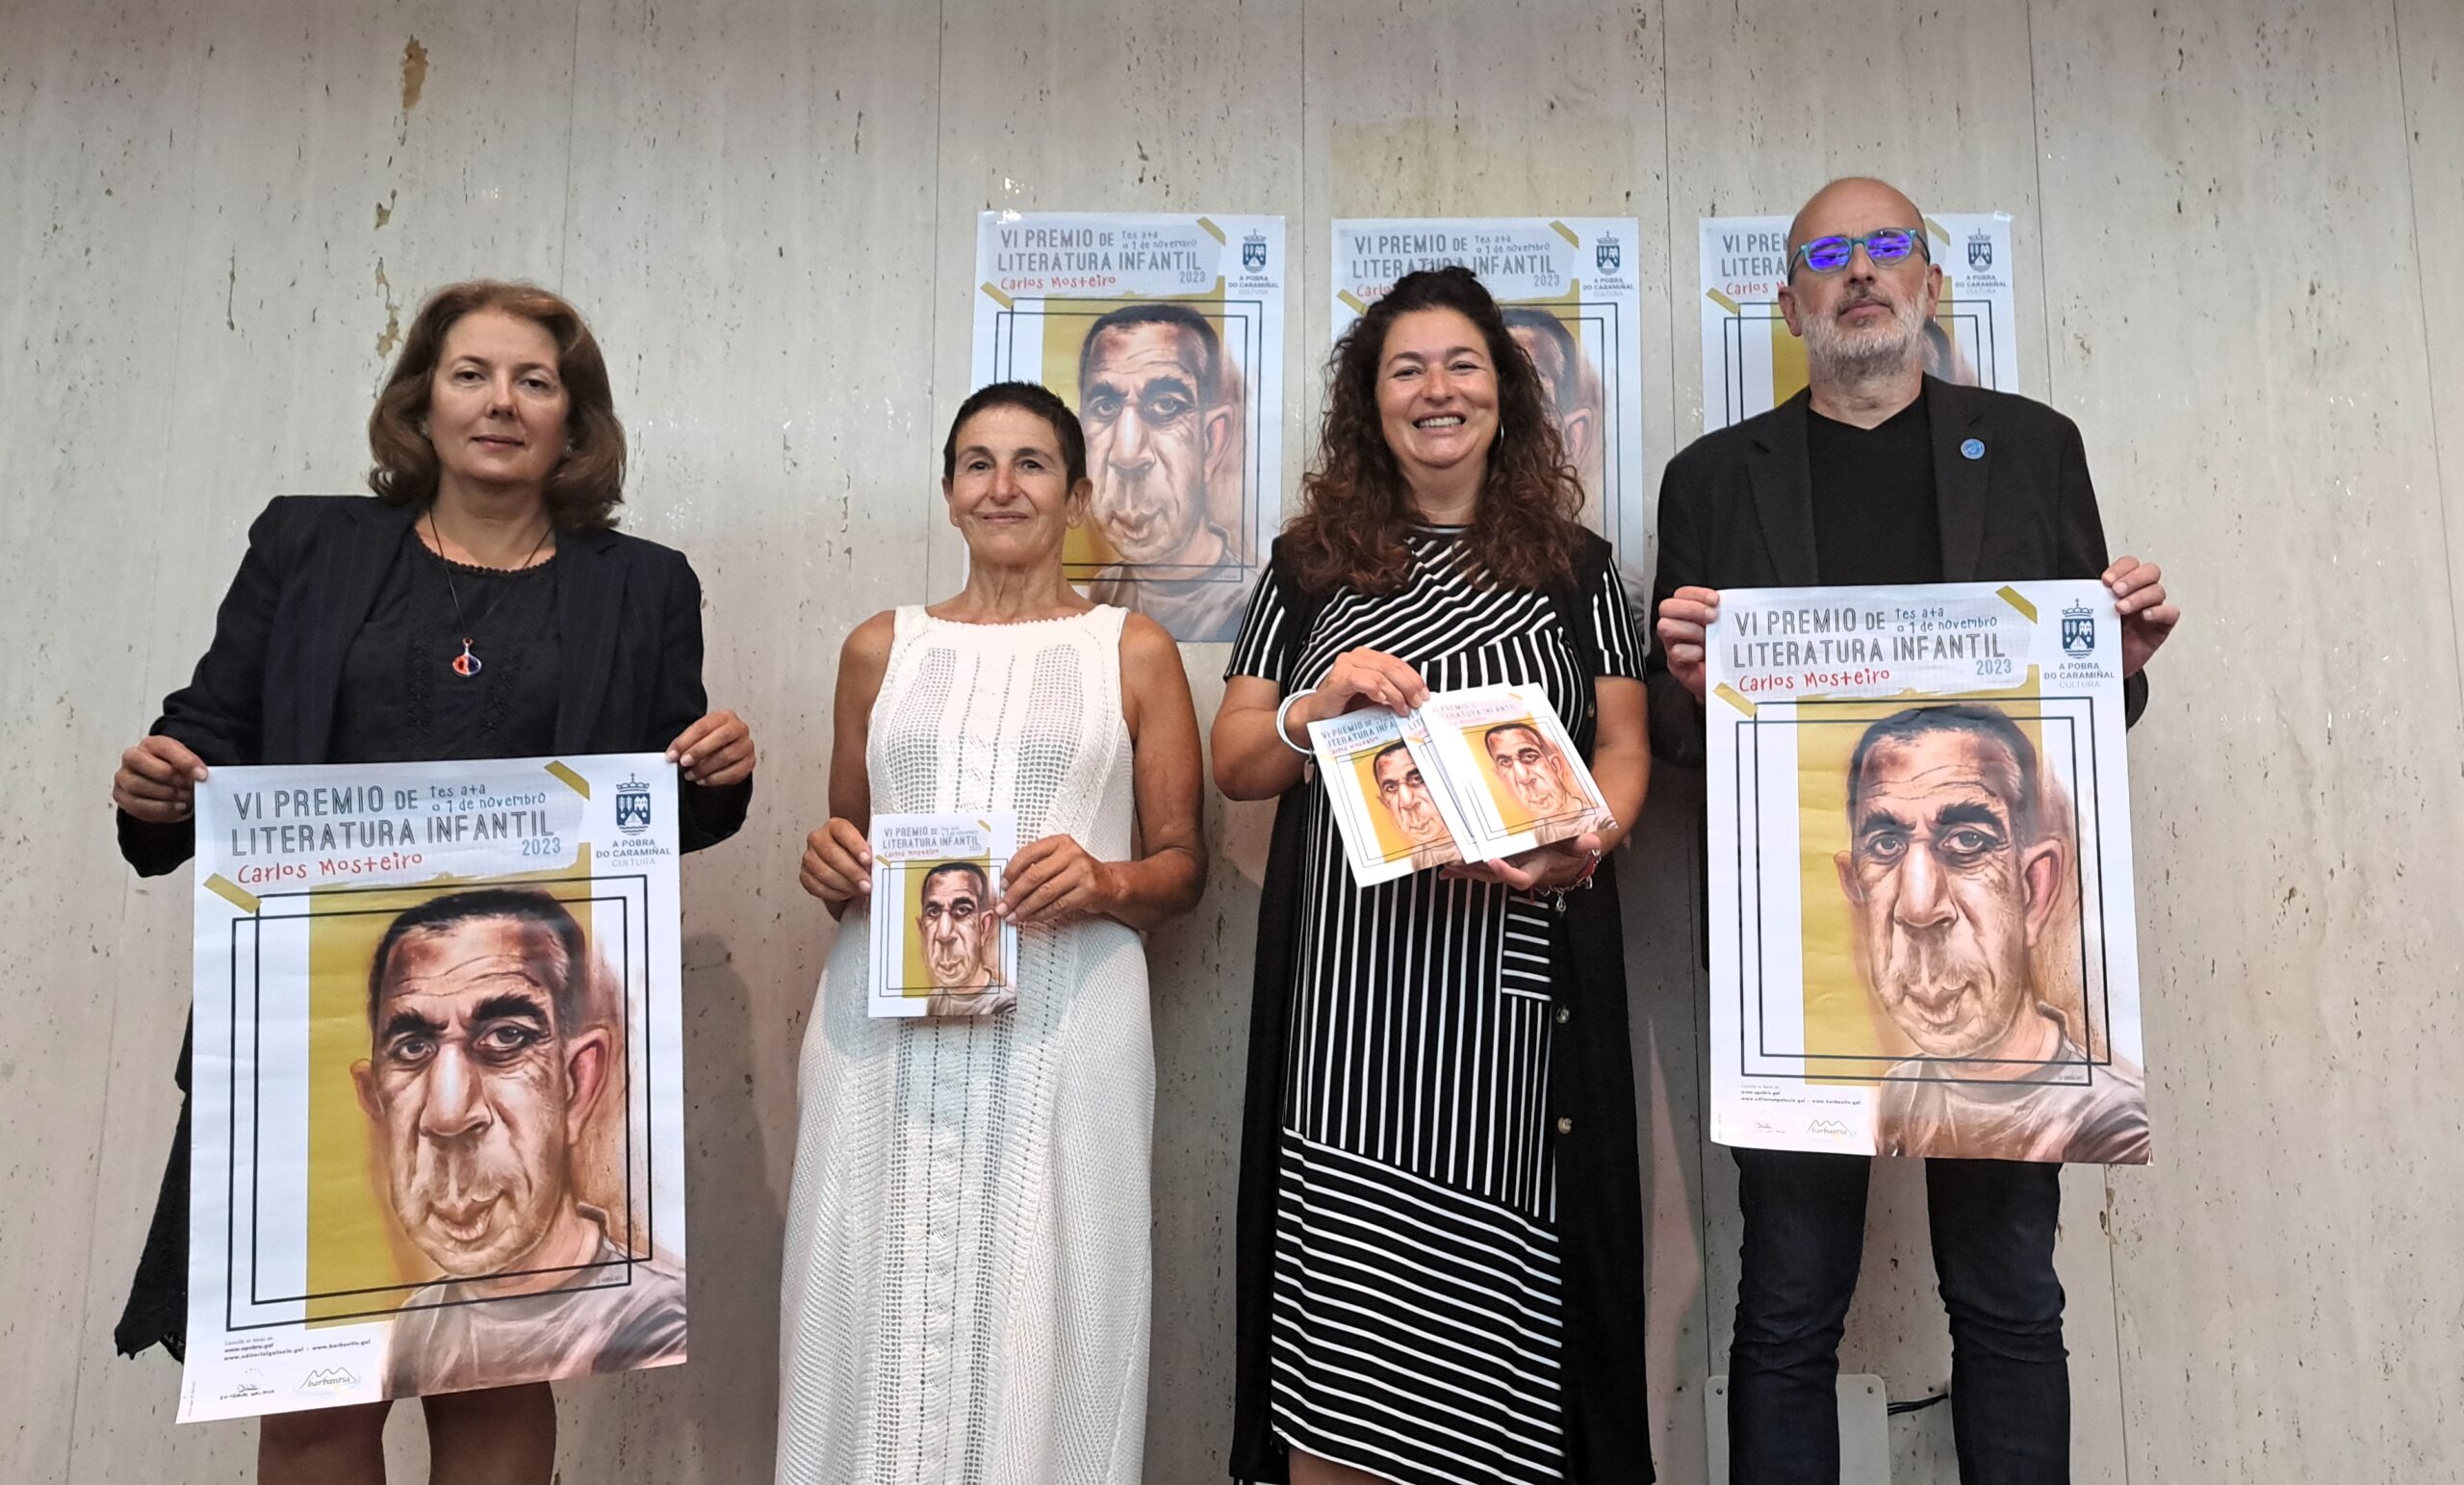 No acto de presentación do VI Premio de Literatura Infantil Carlos Mosteiro efectuado a principios do mes de setembro